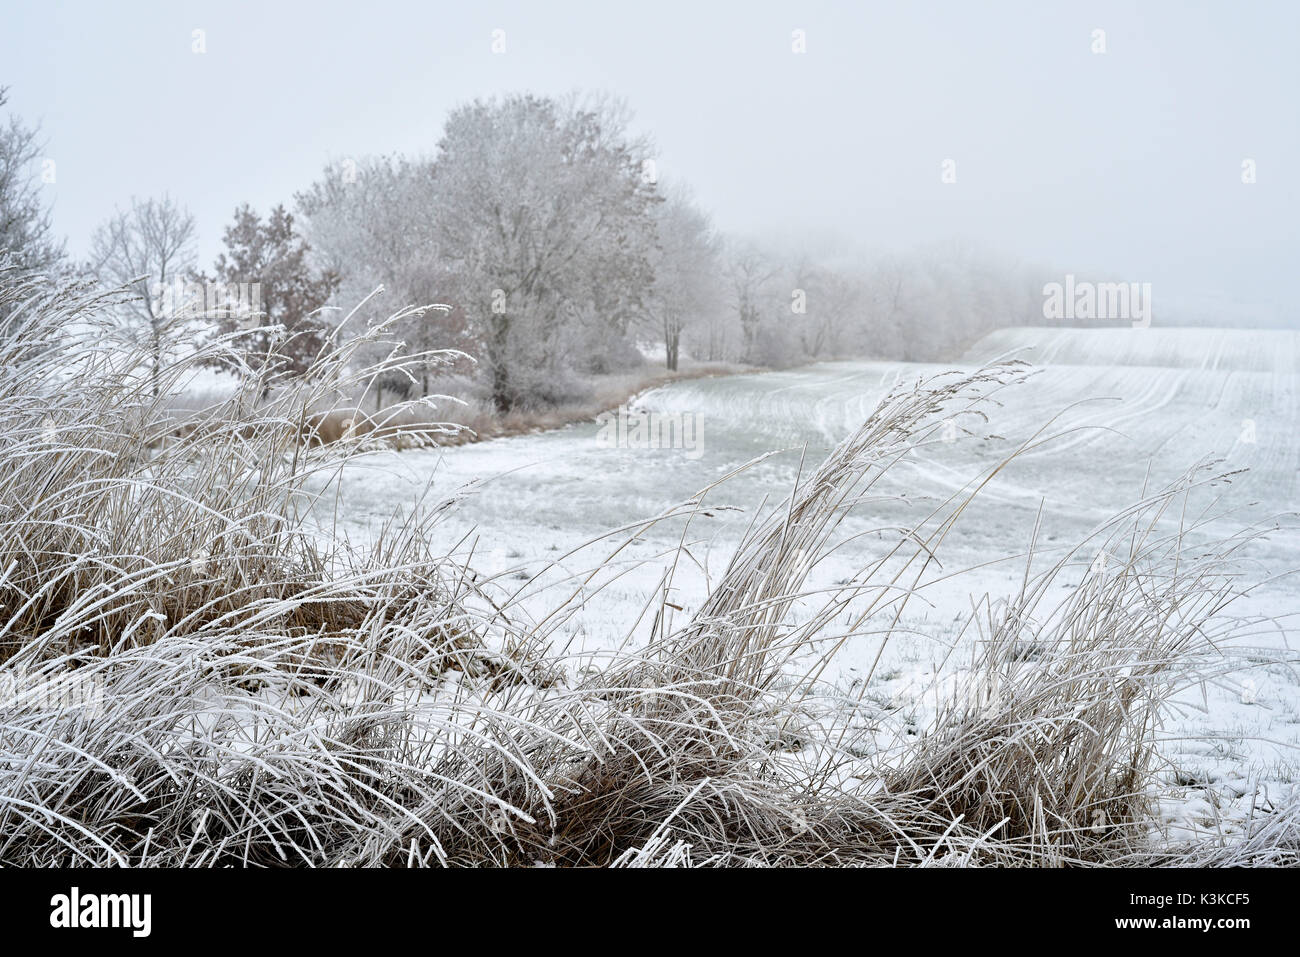 Avec le givre champs couvert, dans l'avant-plan de l'herbe haute et à la gauche de la photo de glace les arbres d'une certaine manière. Banque D'Images